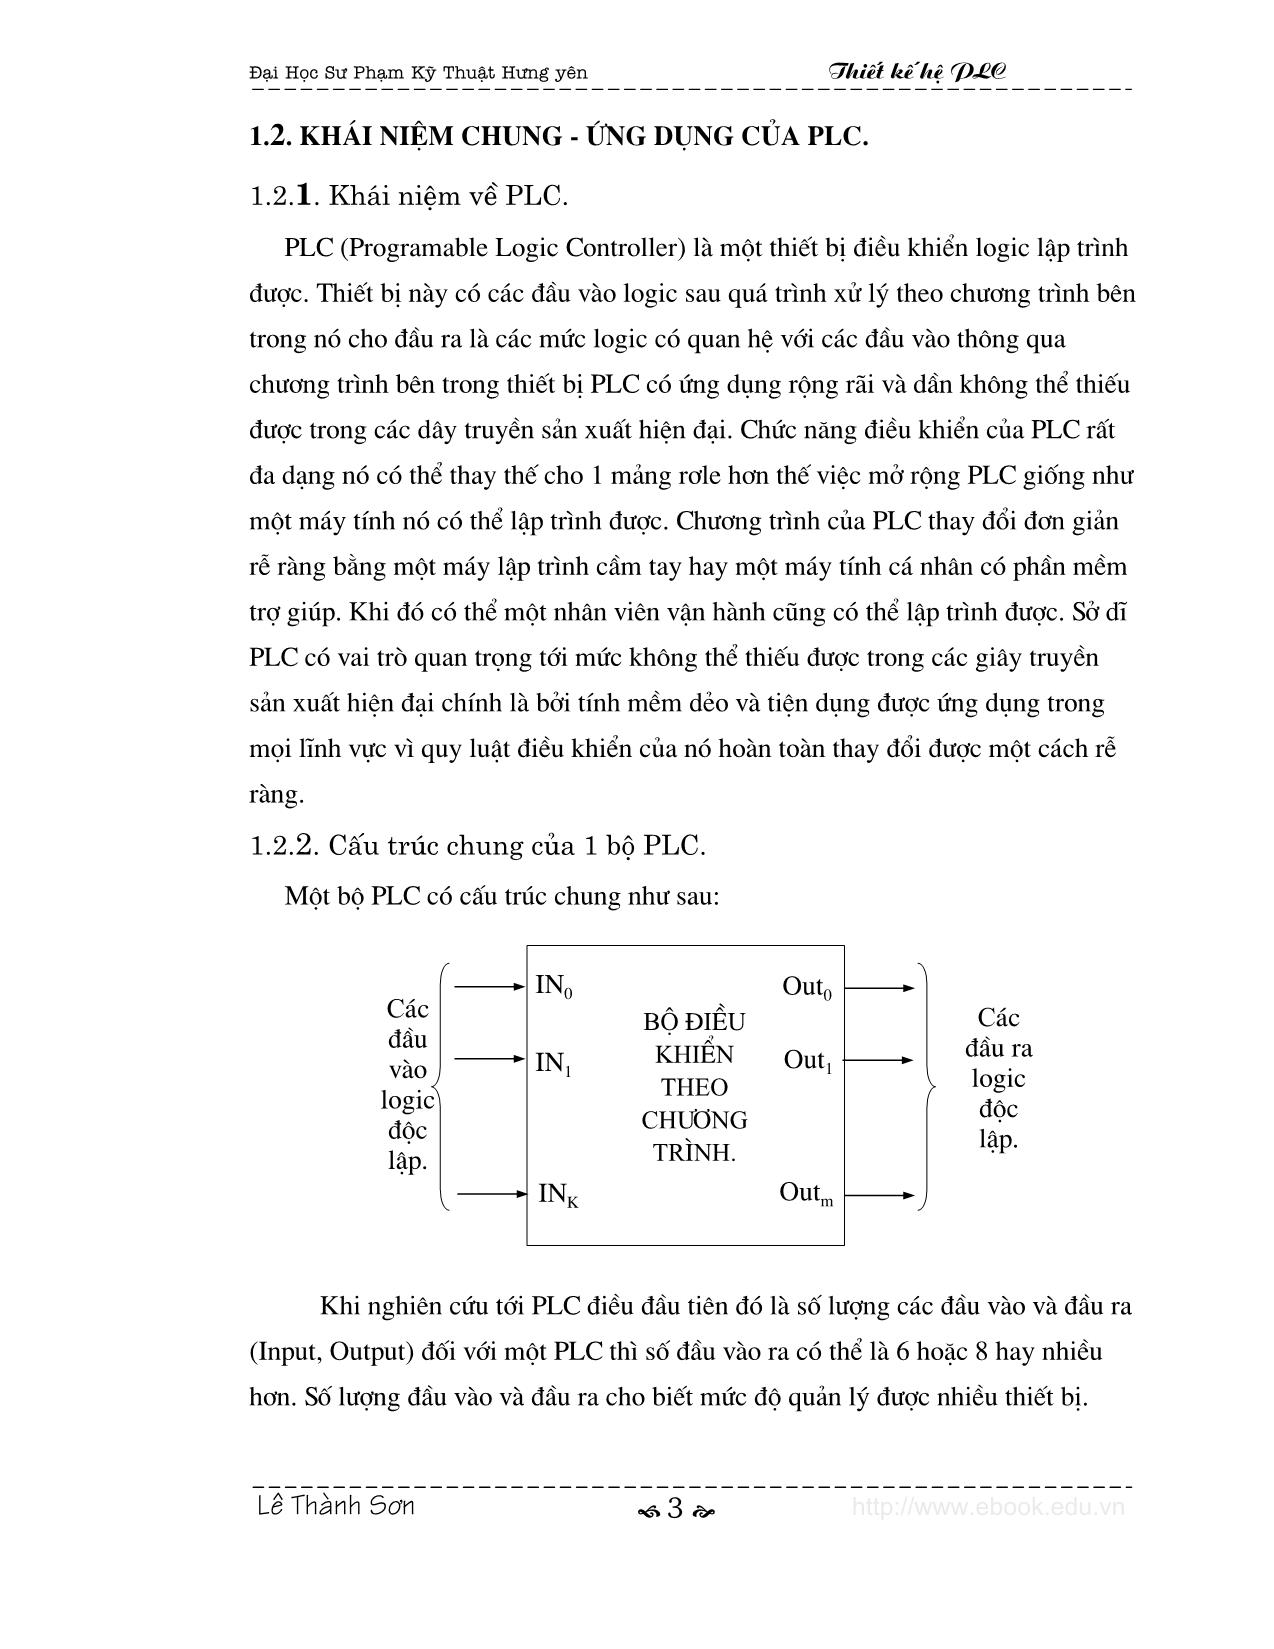 Giới thiệu chung về điều khiển logic và thiết bị plc trang 3